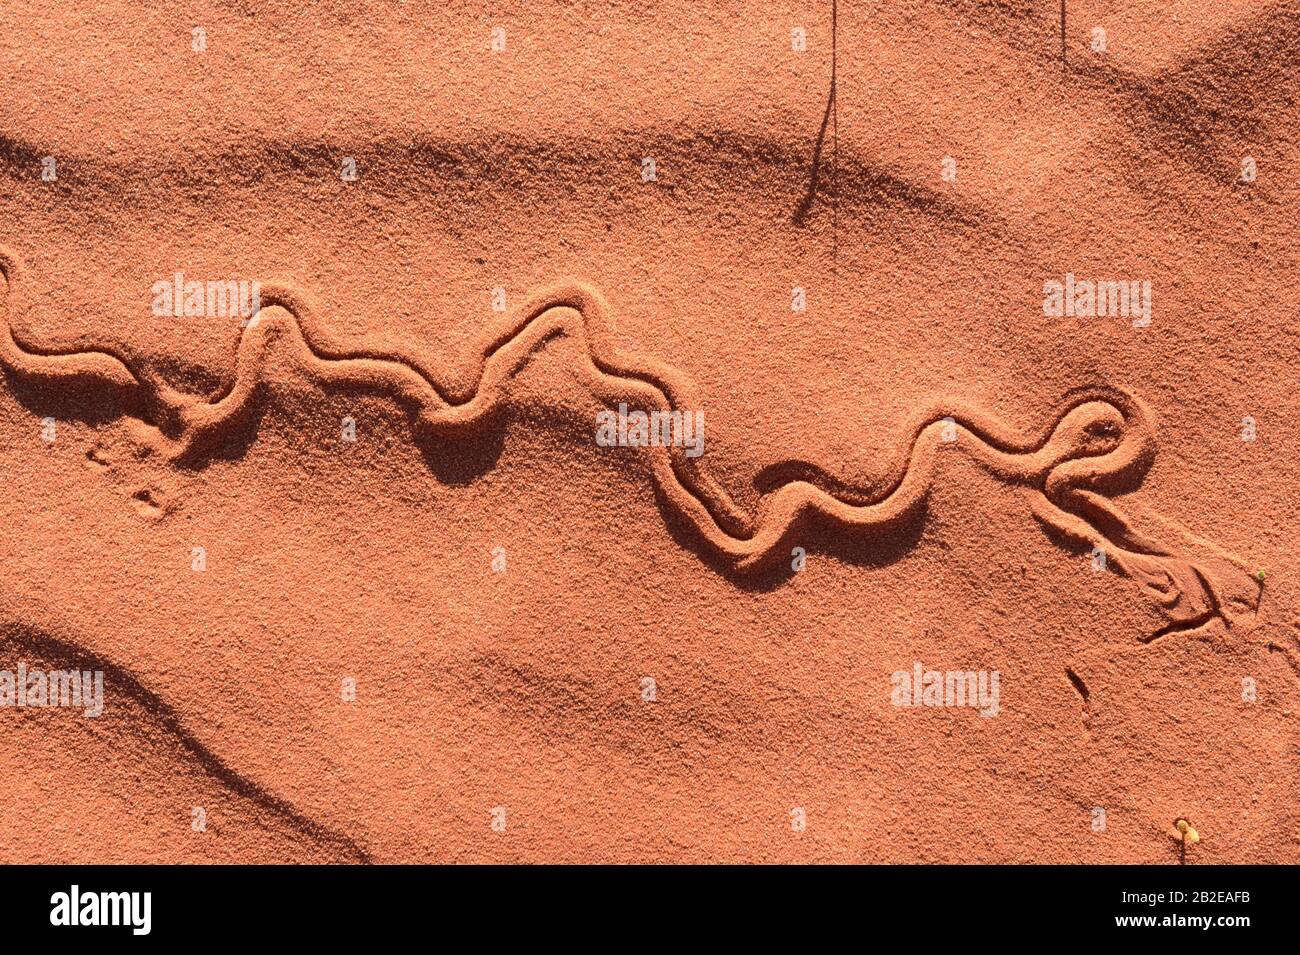 Animaux dans le sable rouge de l'Outback australien, au sud d'Alice Springs, territoire du Nord, territoire du Nord, Australie Banque D'Images